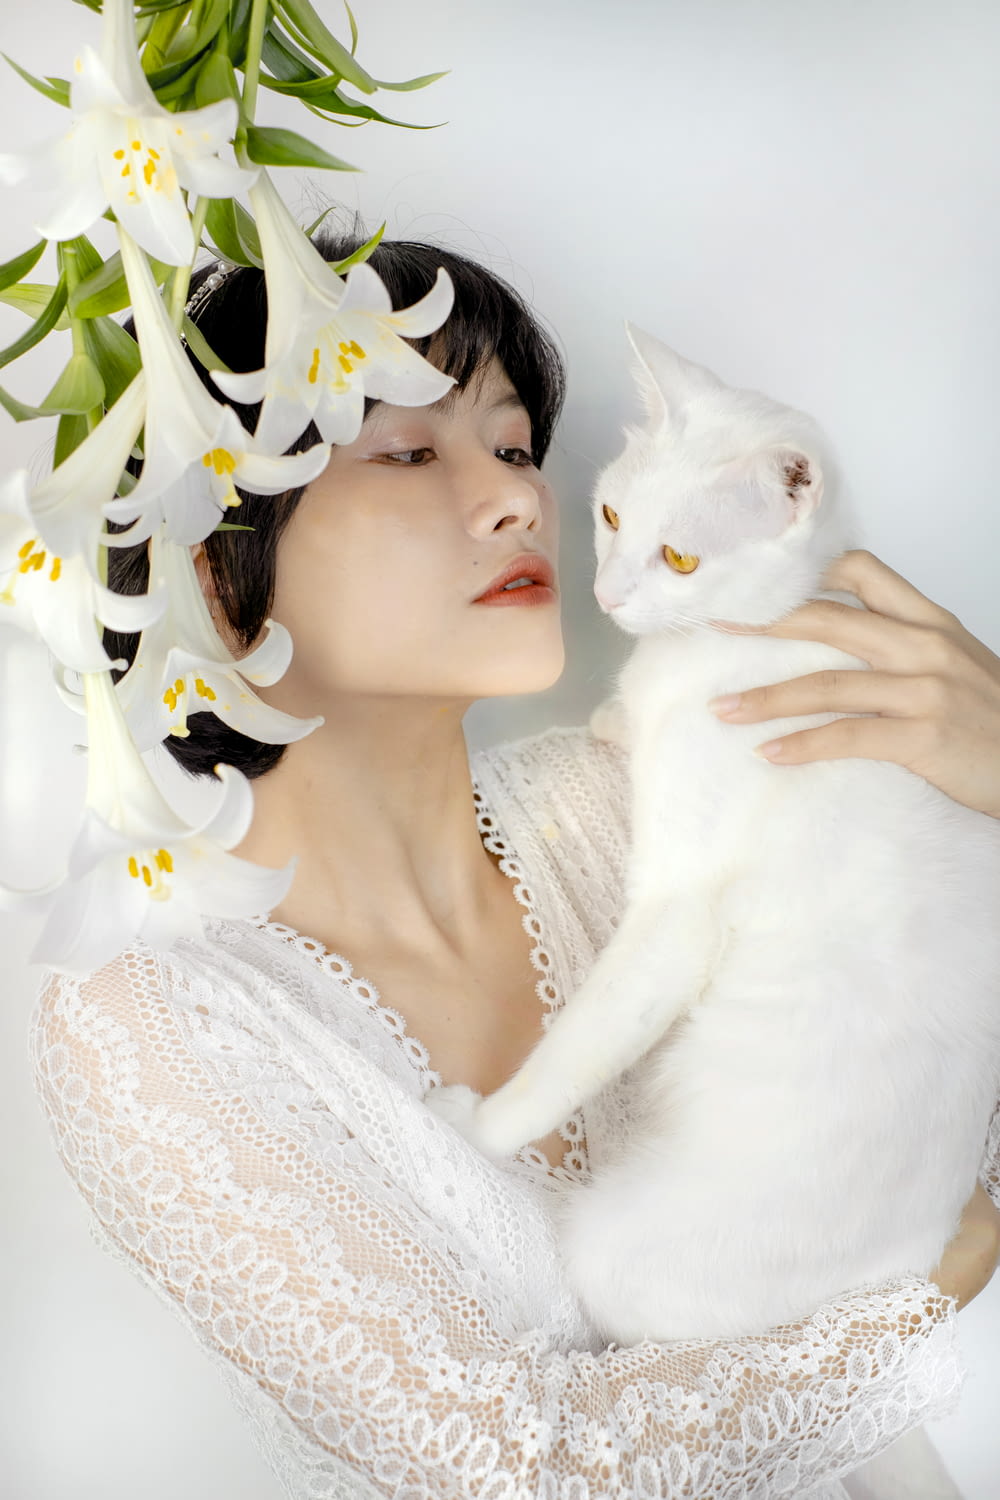 Eine Frau in einem weißen Kleid, die eine weiße Katze hält